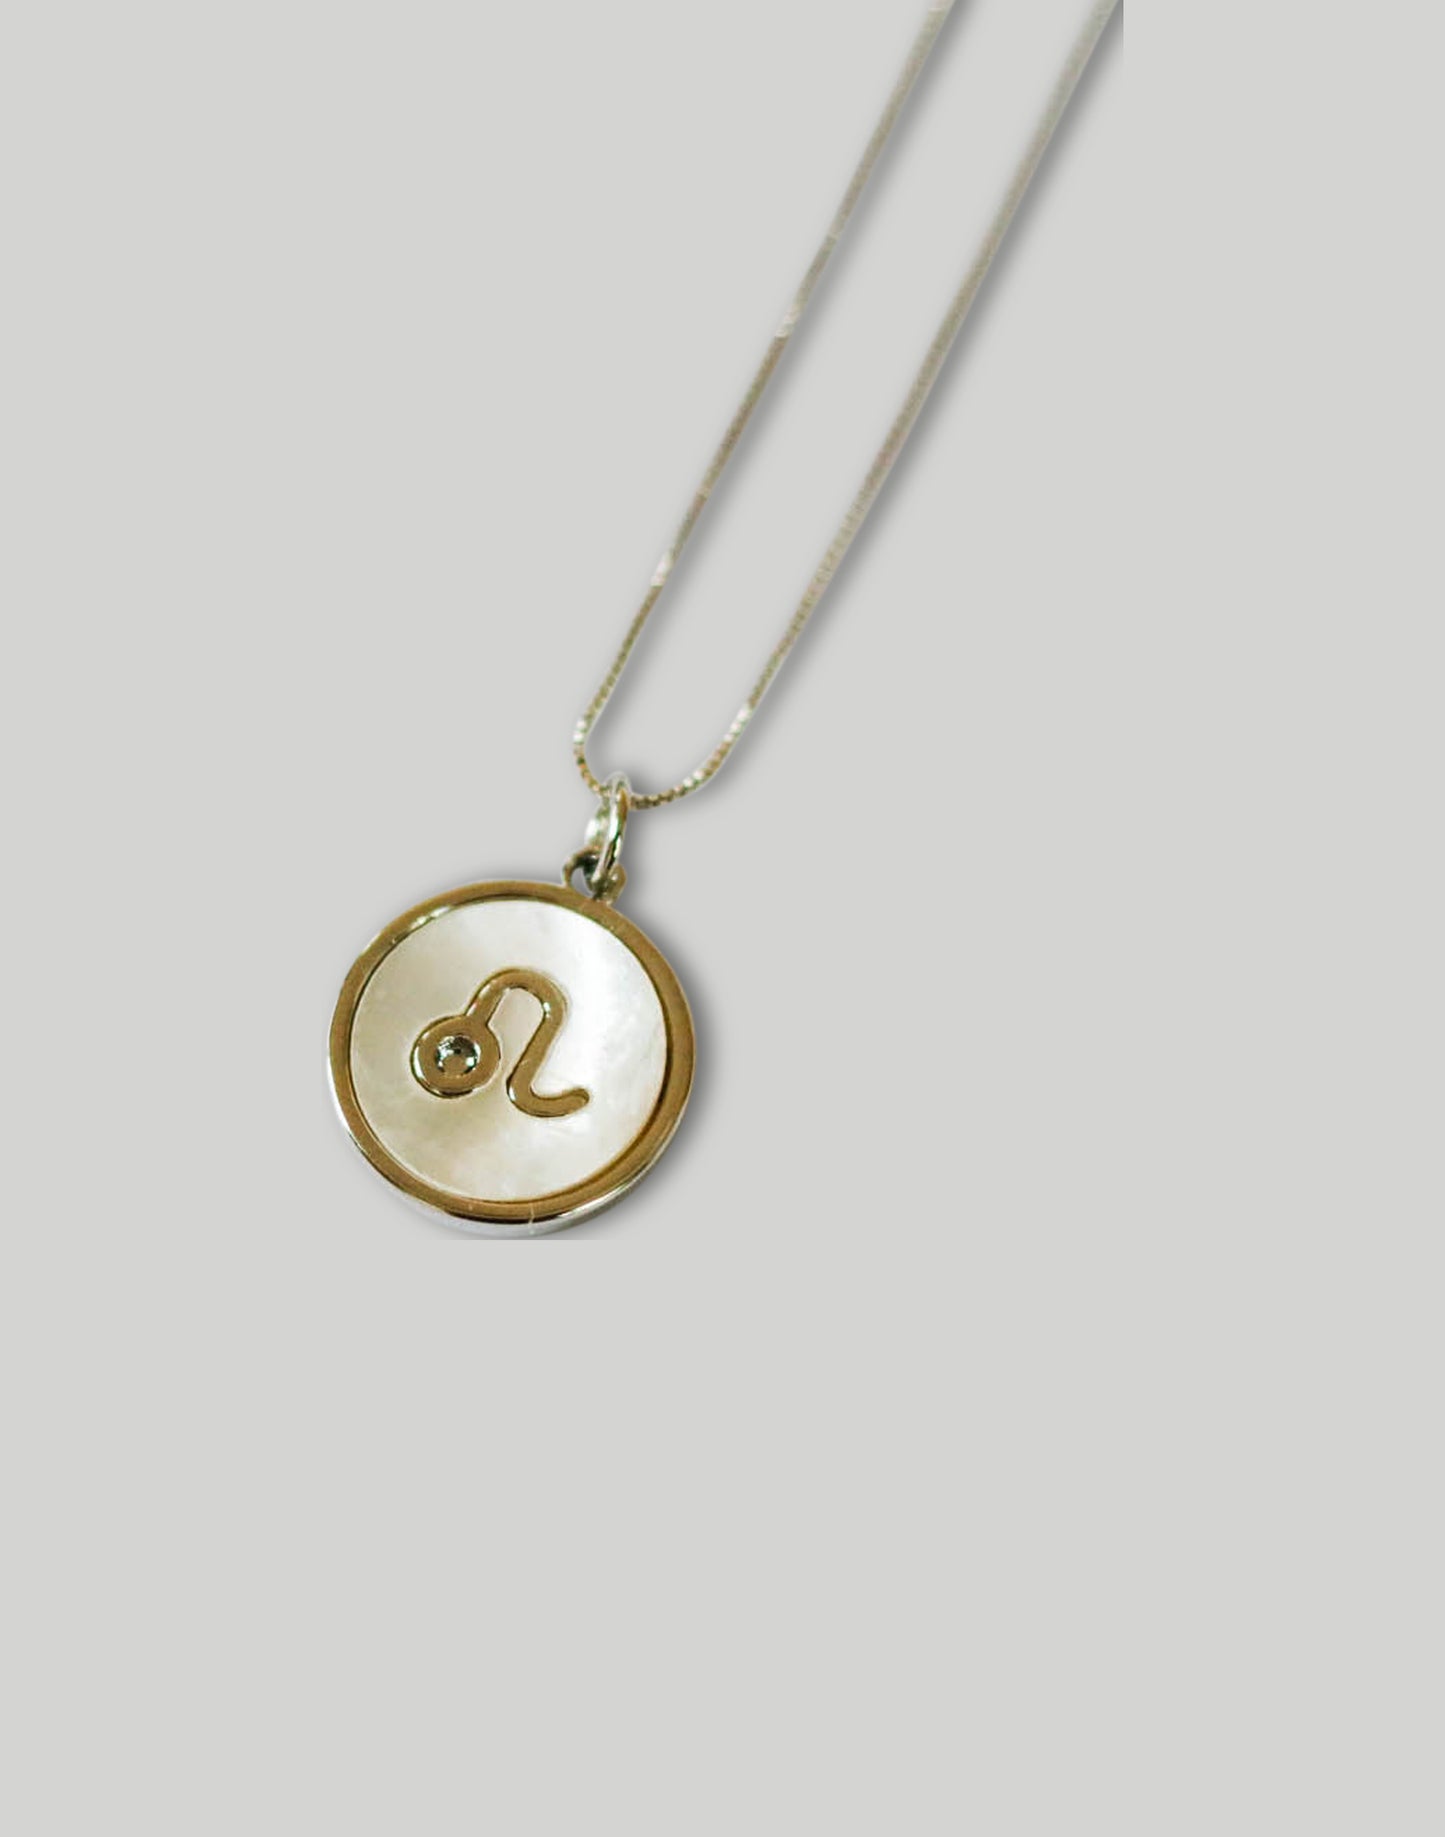 The Minimalist Zodiac Necklace in Silver